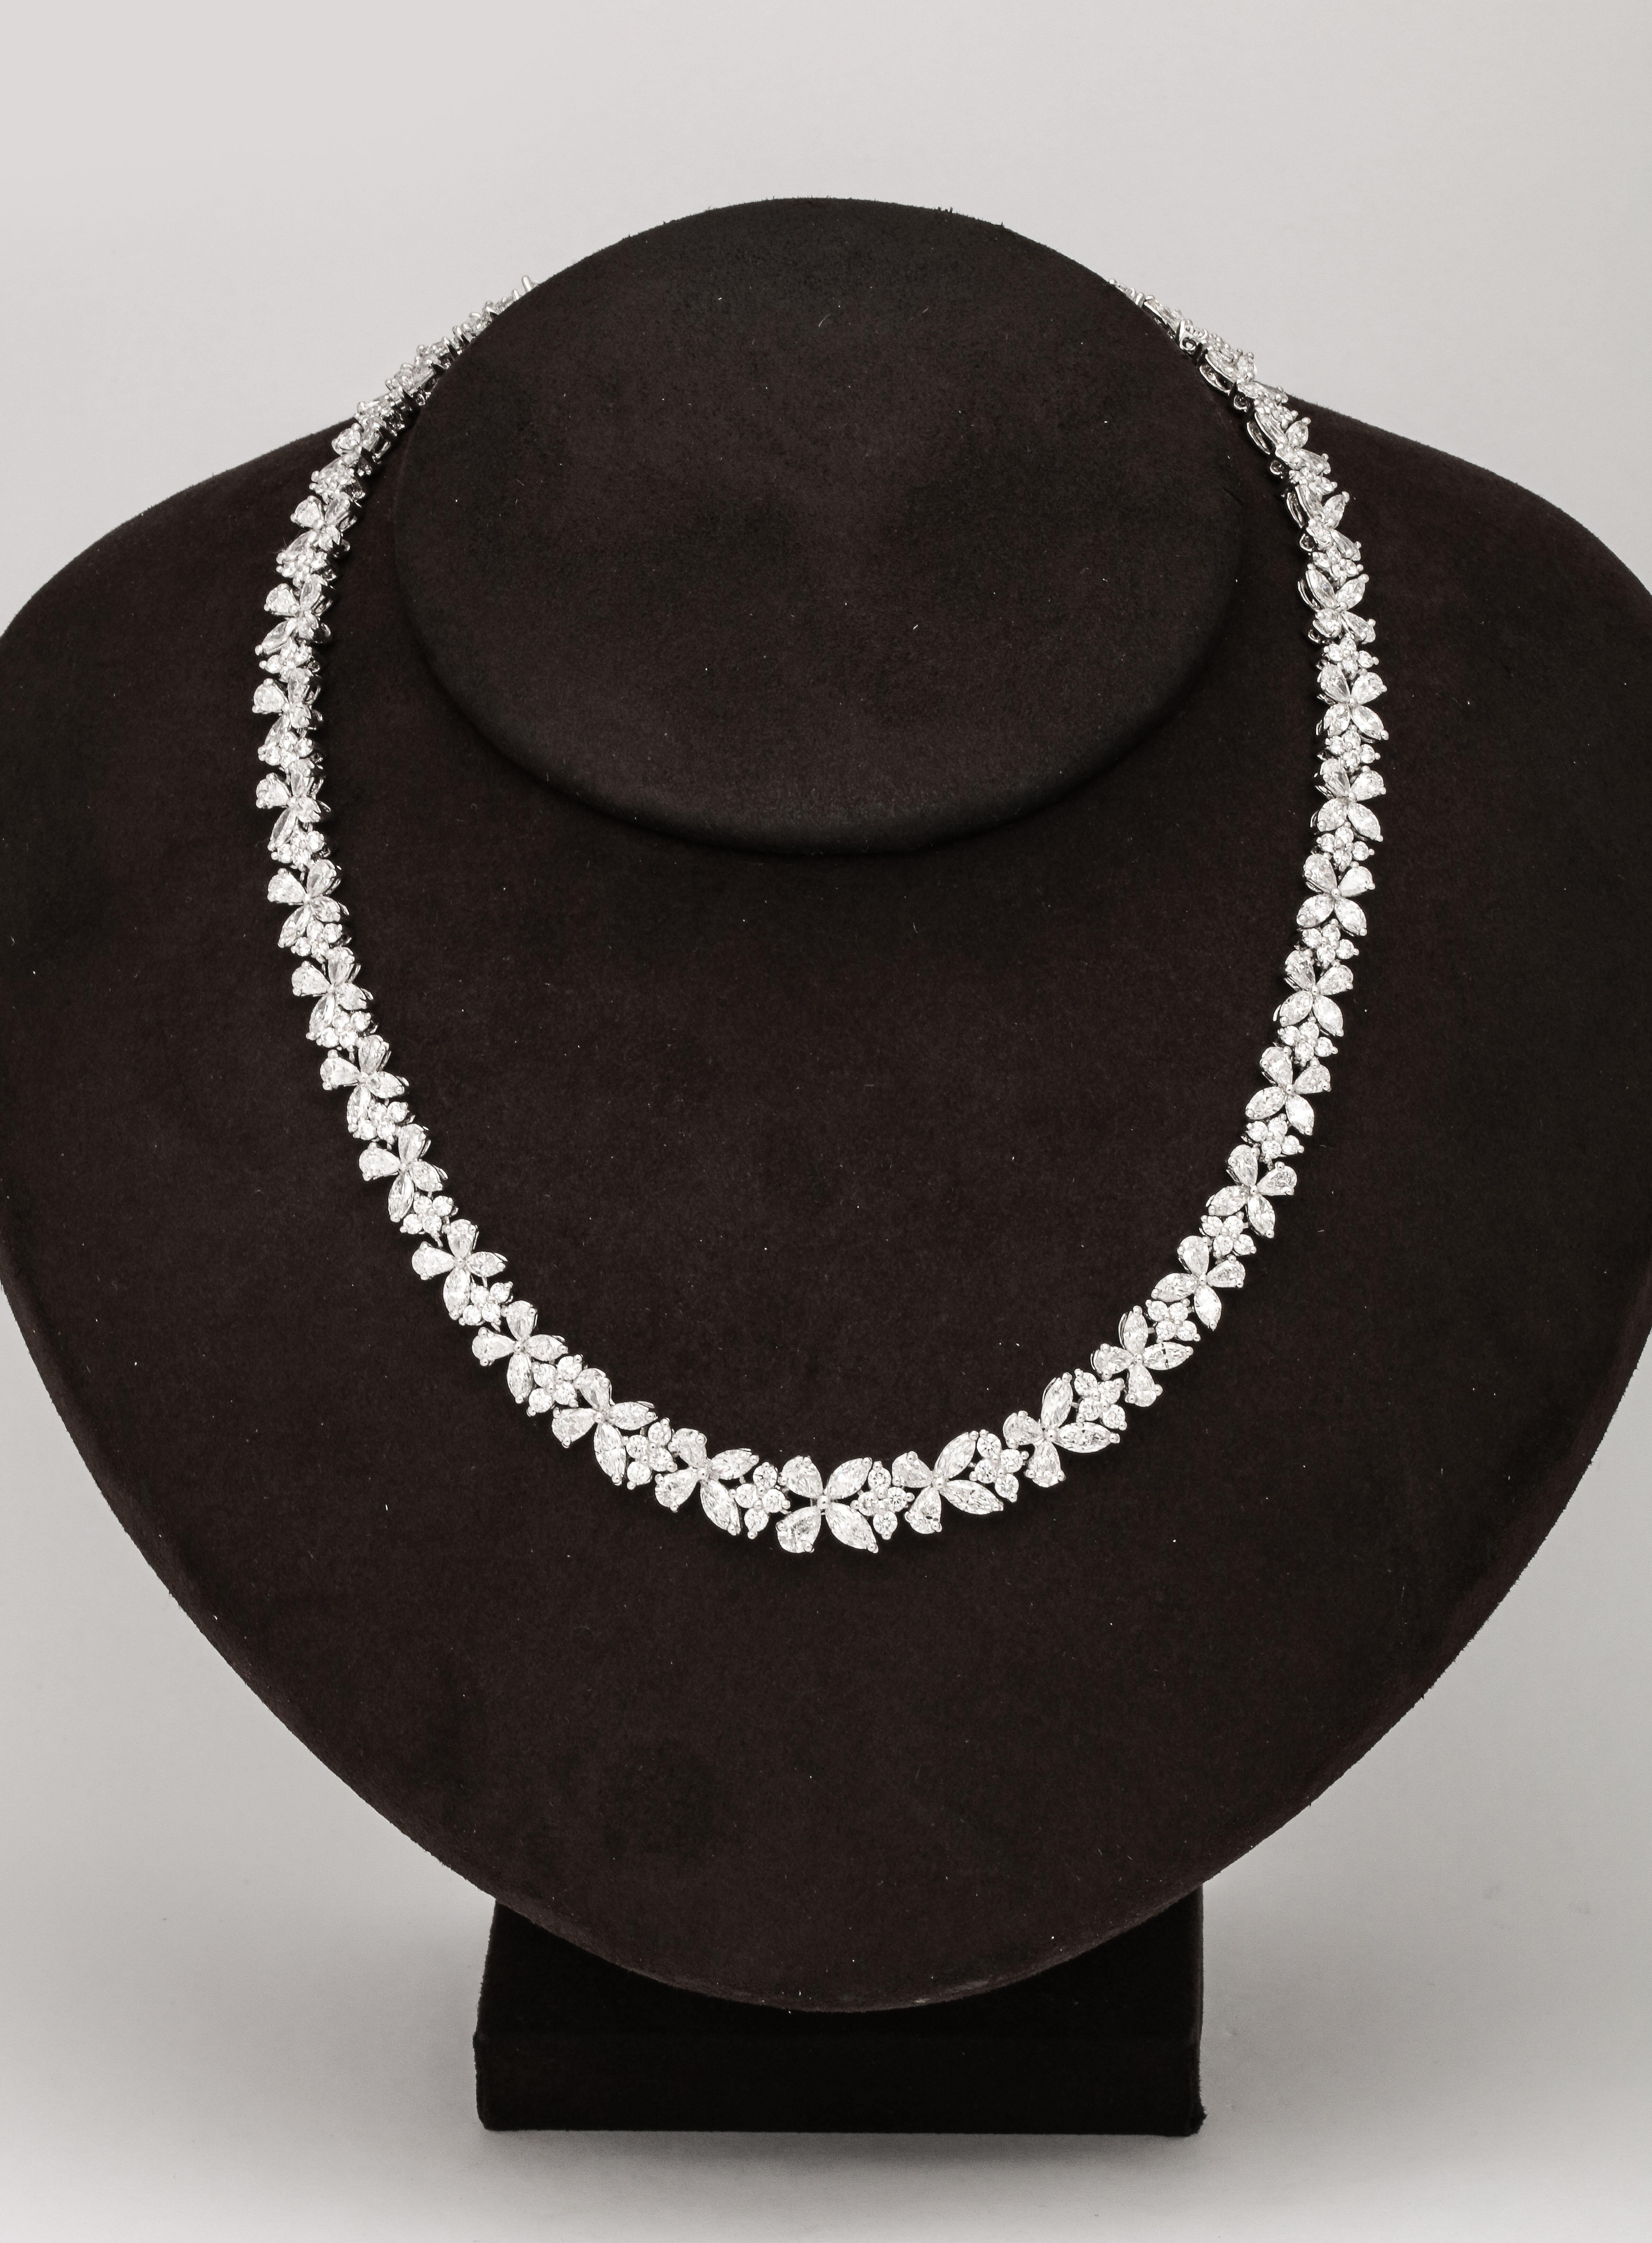 
Un design élégant et intemporel. 

30.95 carats de diamants blancs de taille poire, marquise et ronde de taille brillant, sertis en platine. 

Longueur de 16 pouces. 
